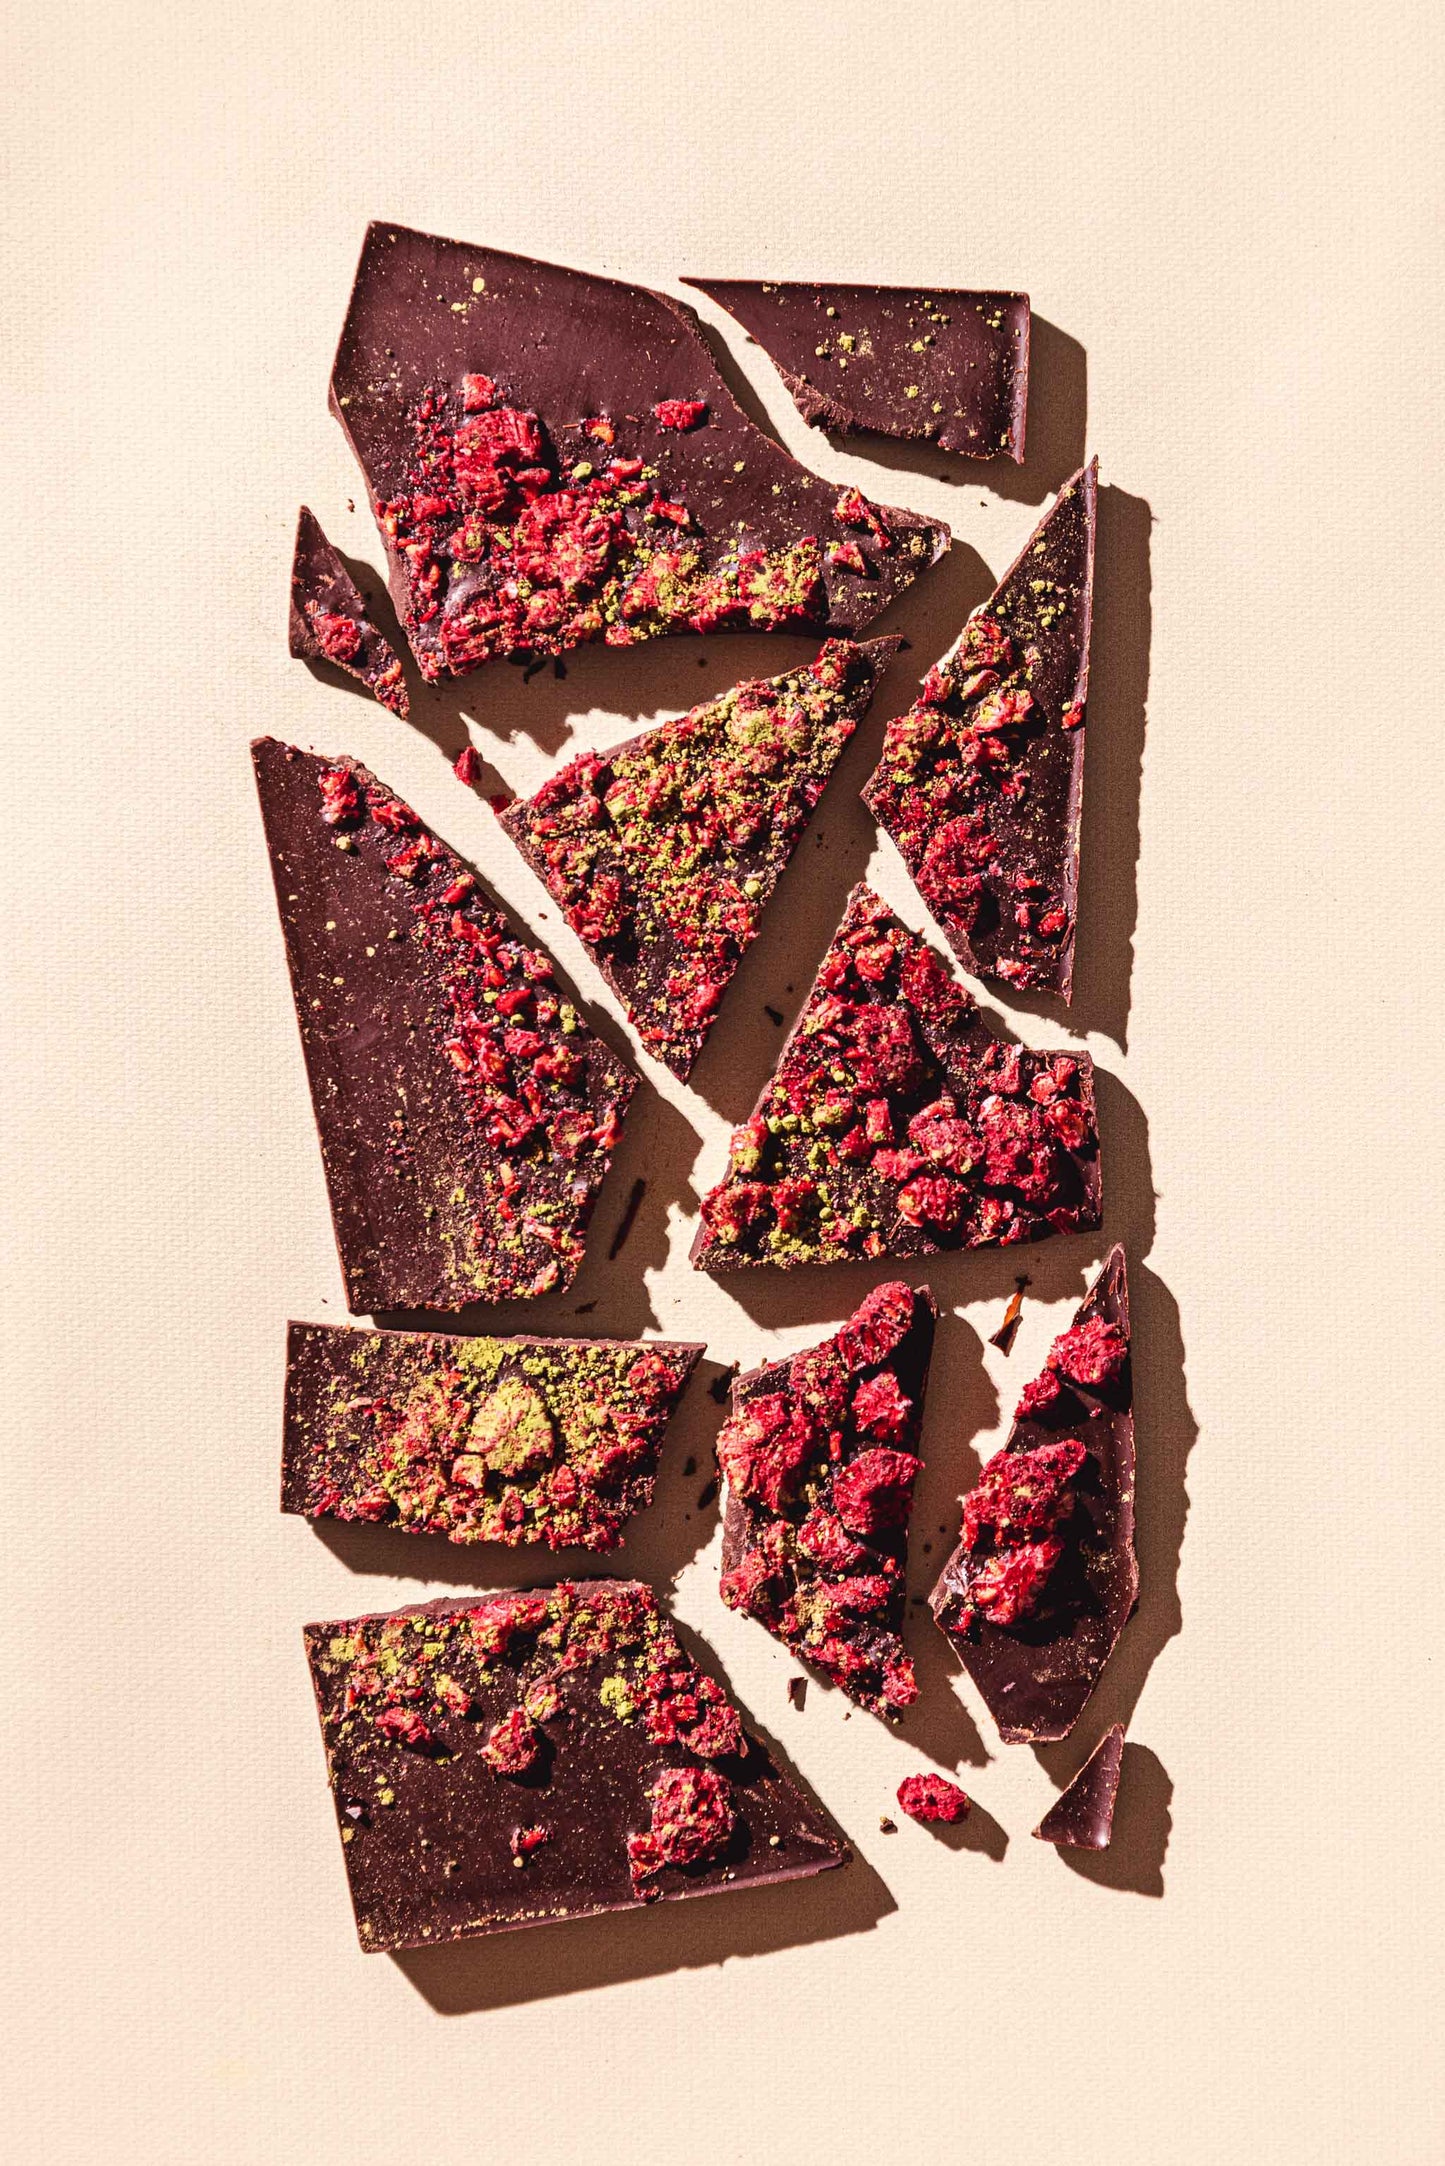 Vegan Organic Dark Chocolate Matcha Raspberry Reishi - Healing